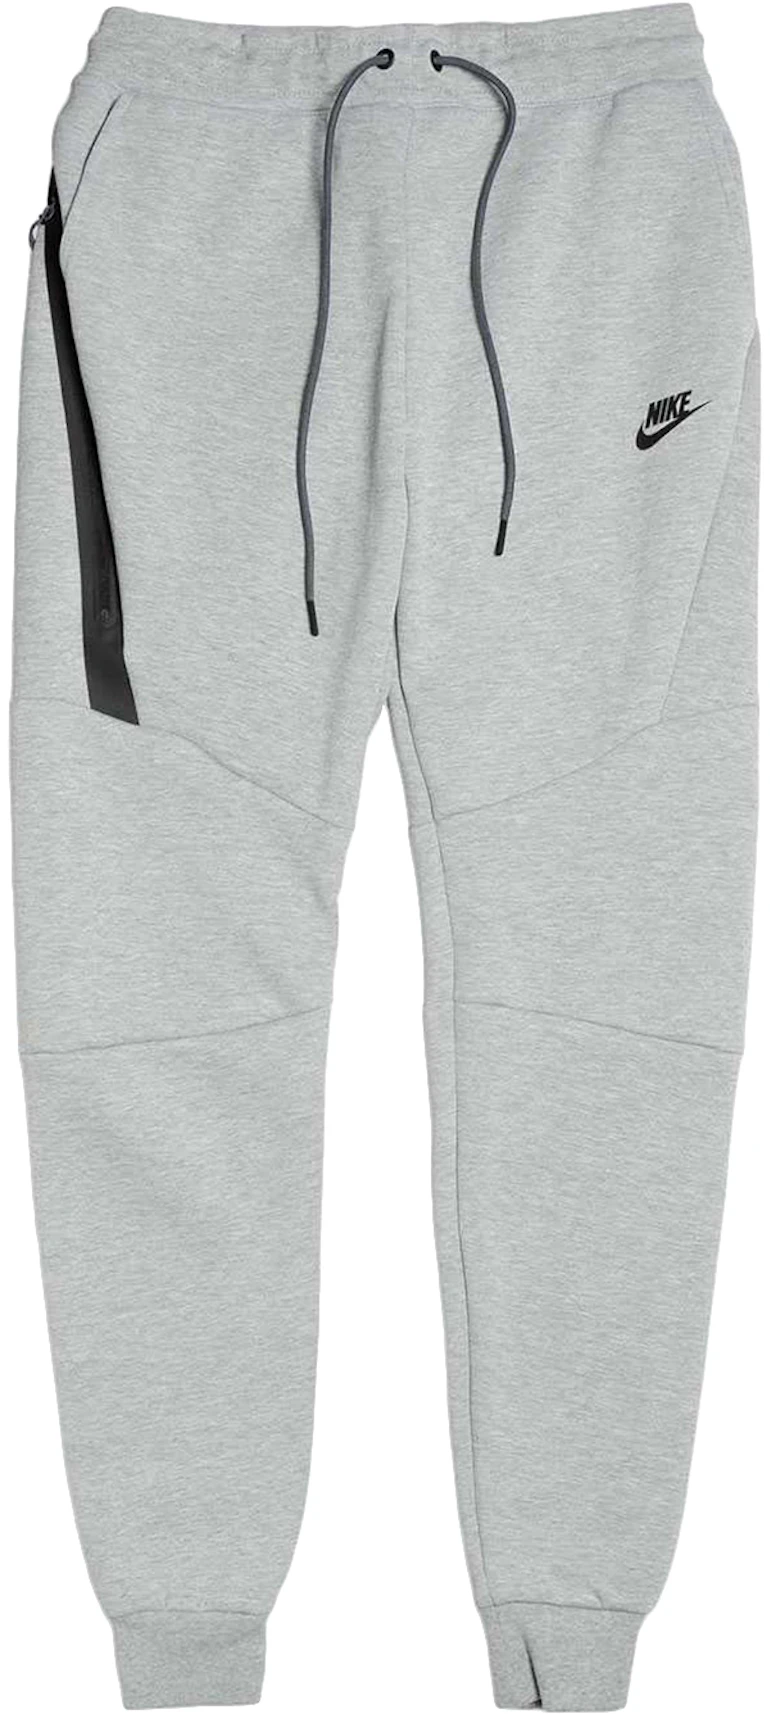 Nike Sportswear Tech Fleece Grey/Black - US